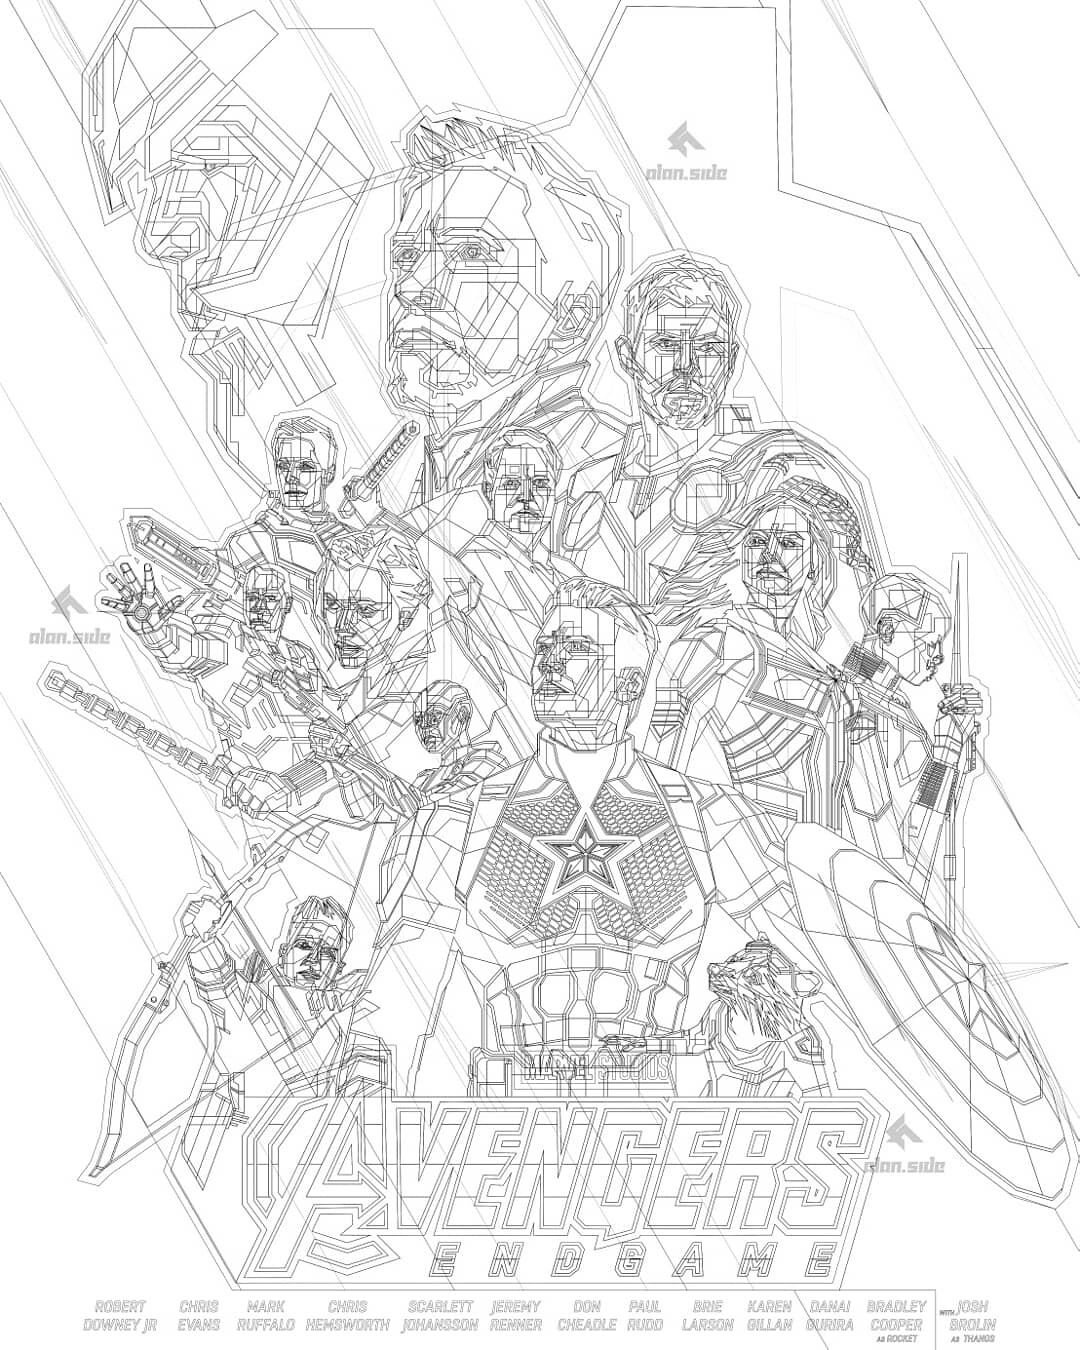 Artist Recreates Avengers Endgame Poster with Marvel Comic Book Art